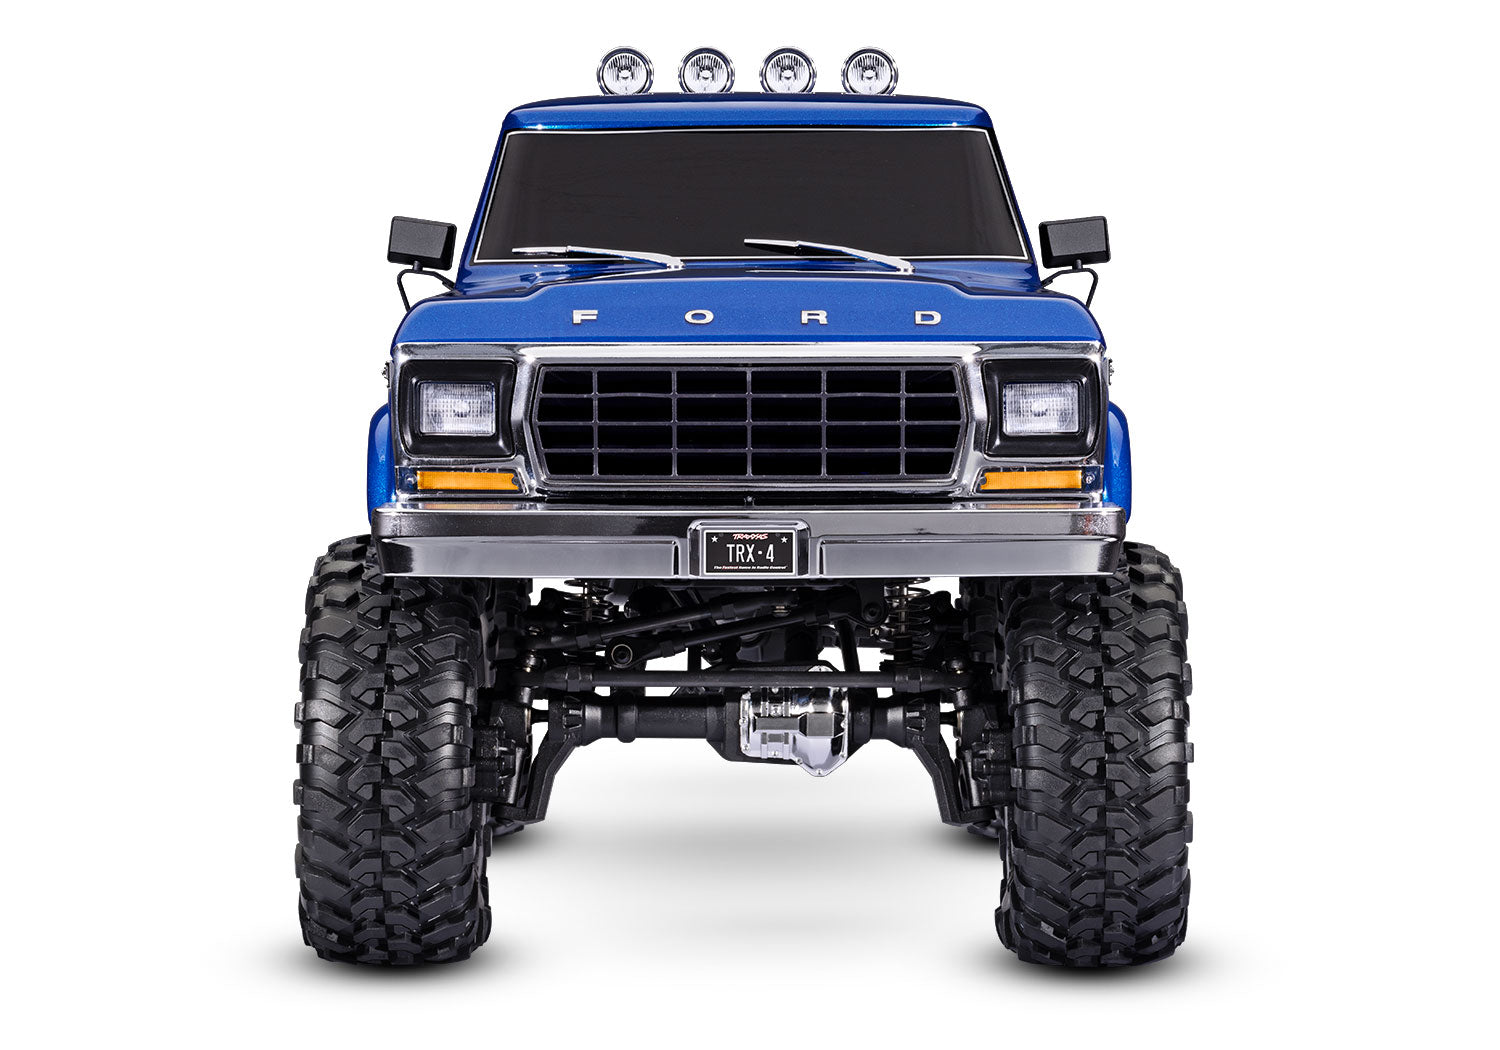 Ford F-150 High Trail Edition (Blue) - 92046-4-BLUE -TRAXAS TRX-4